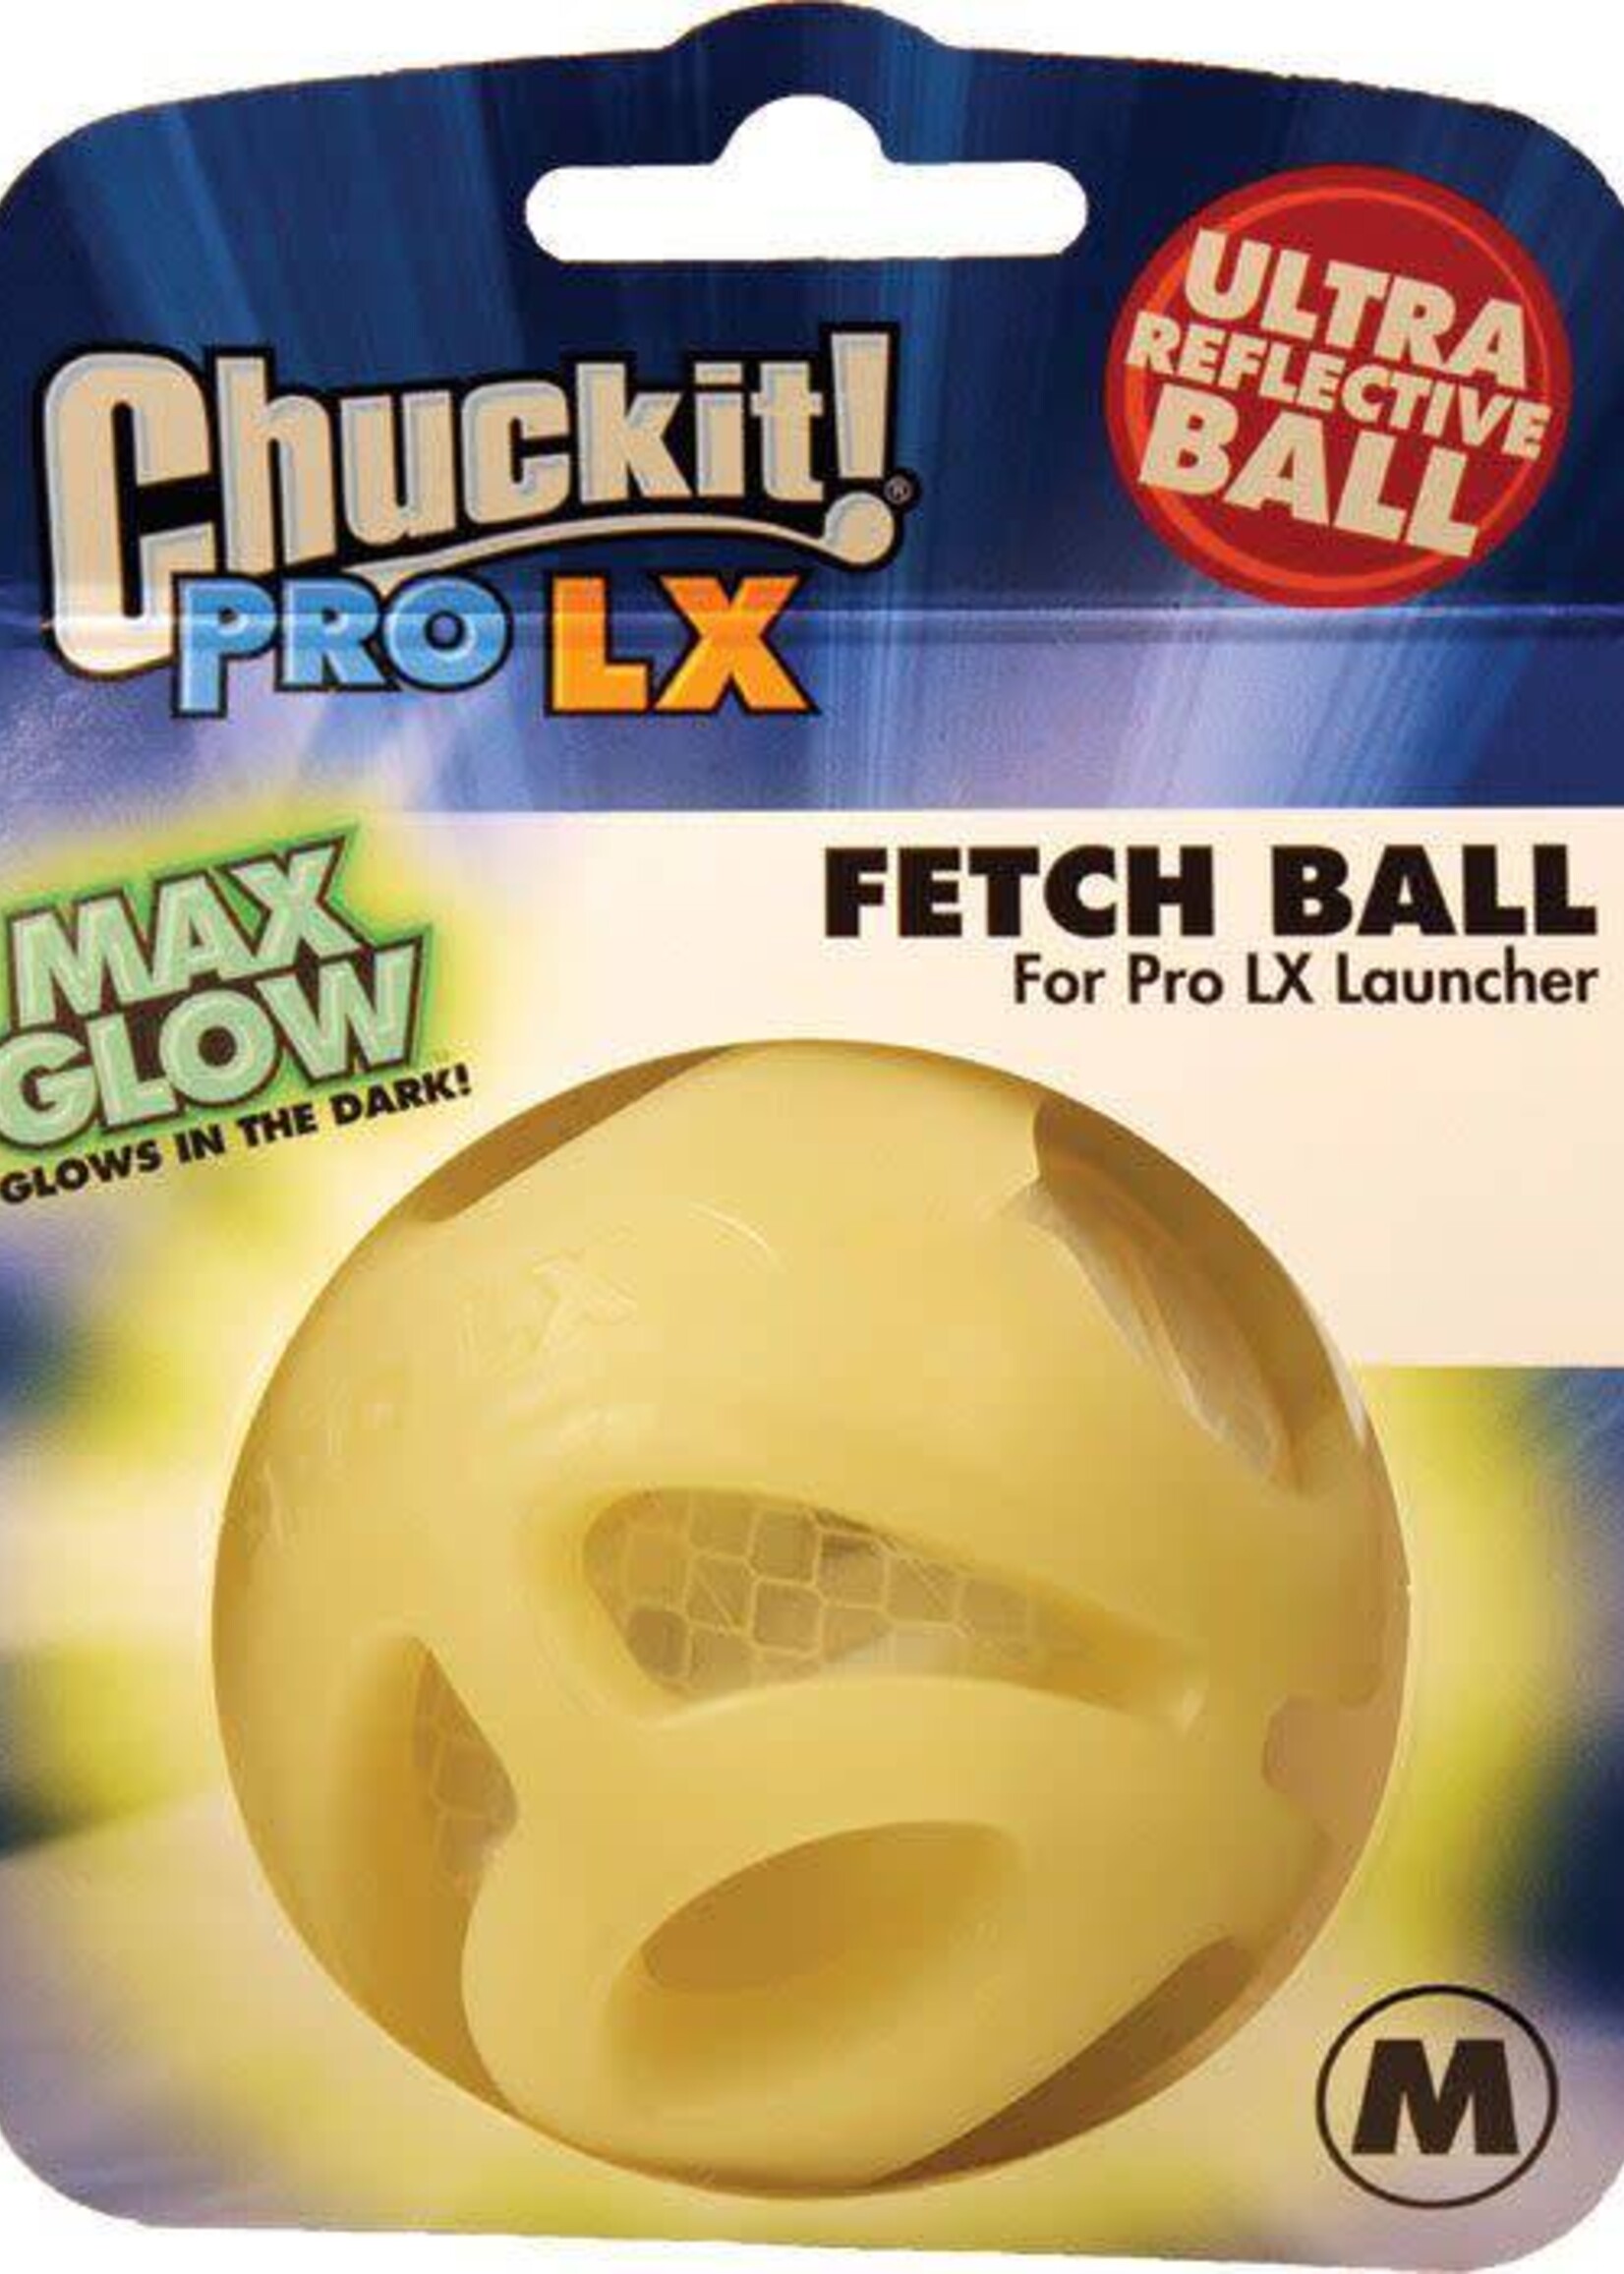 Chuckit! Pro M Max Glow Fetch Ball